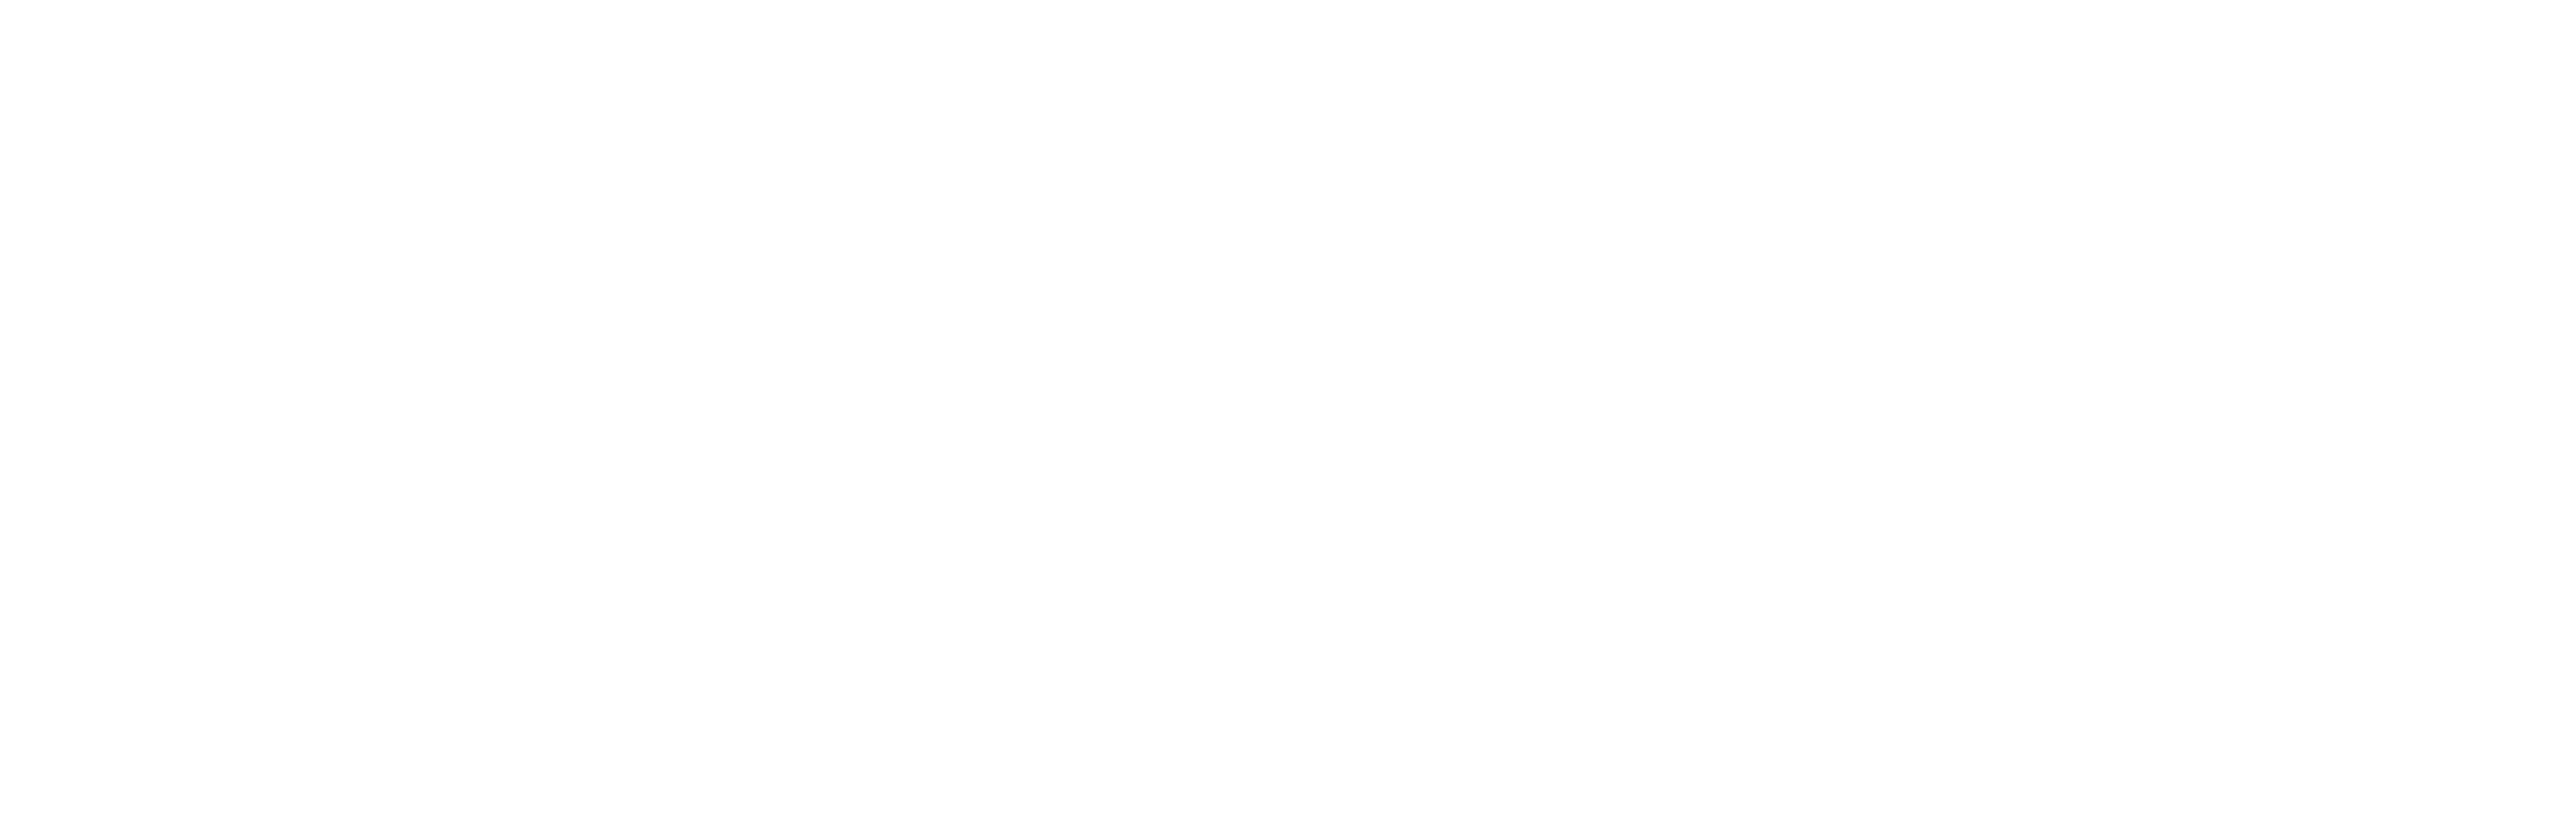 Diesel Automotive